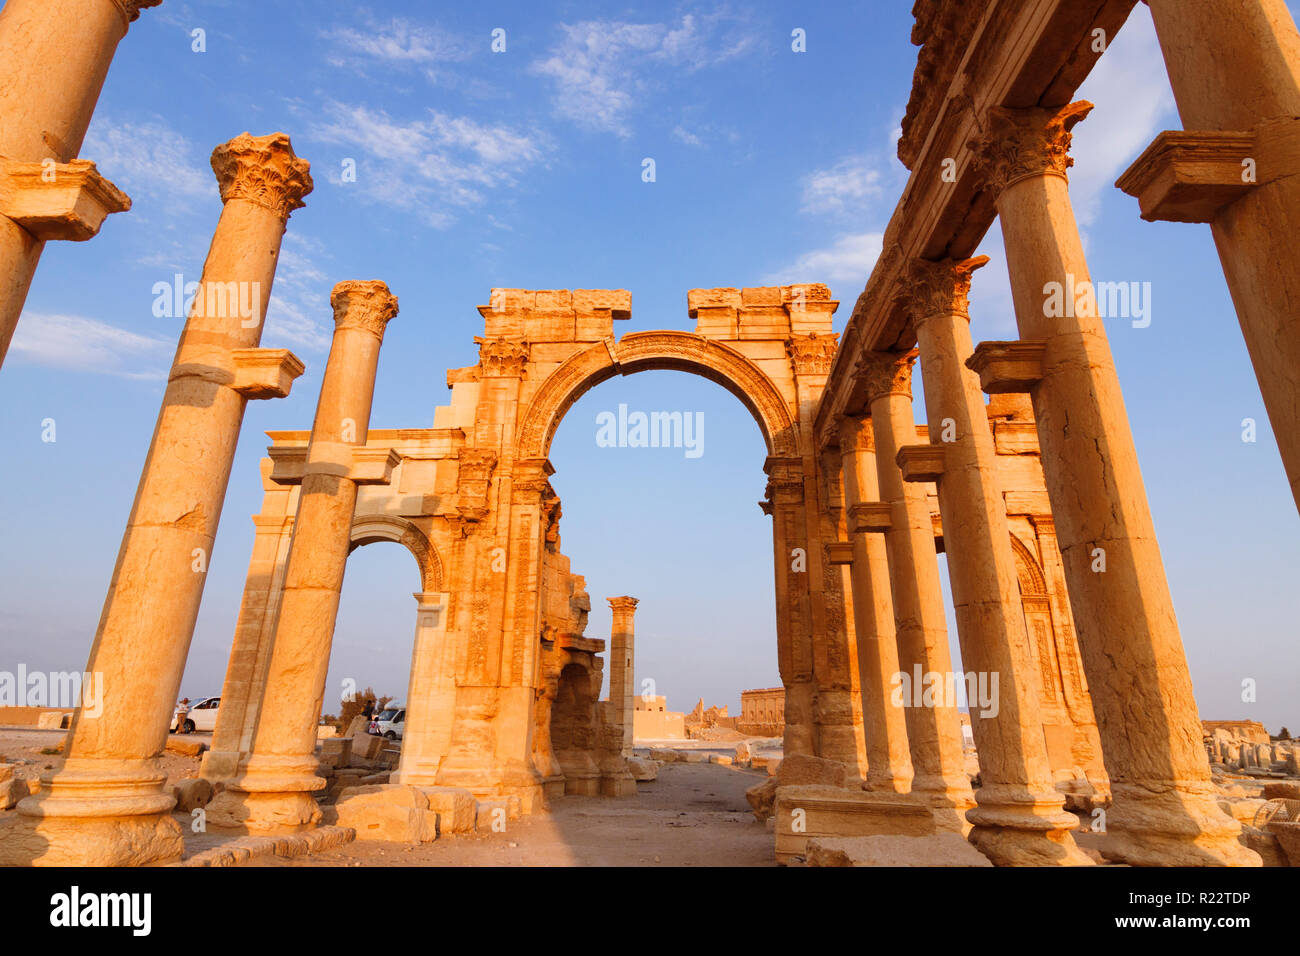 Palmyra, Homs Governatorato, Siria - Maggio 26th, 2009 : GRANDE colonnato e III secolo monumentale arco di trionfo di Palmyra, Romano arco ornamentale Foto Stock